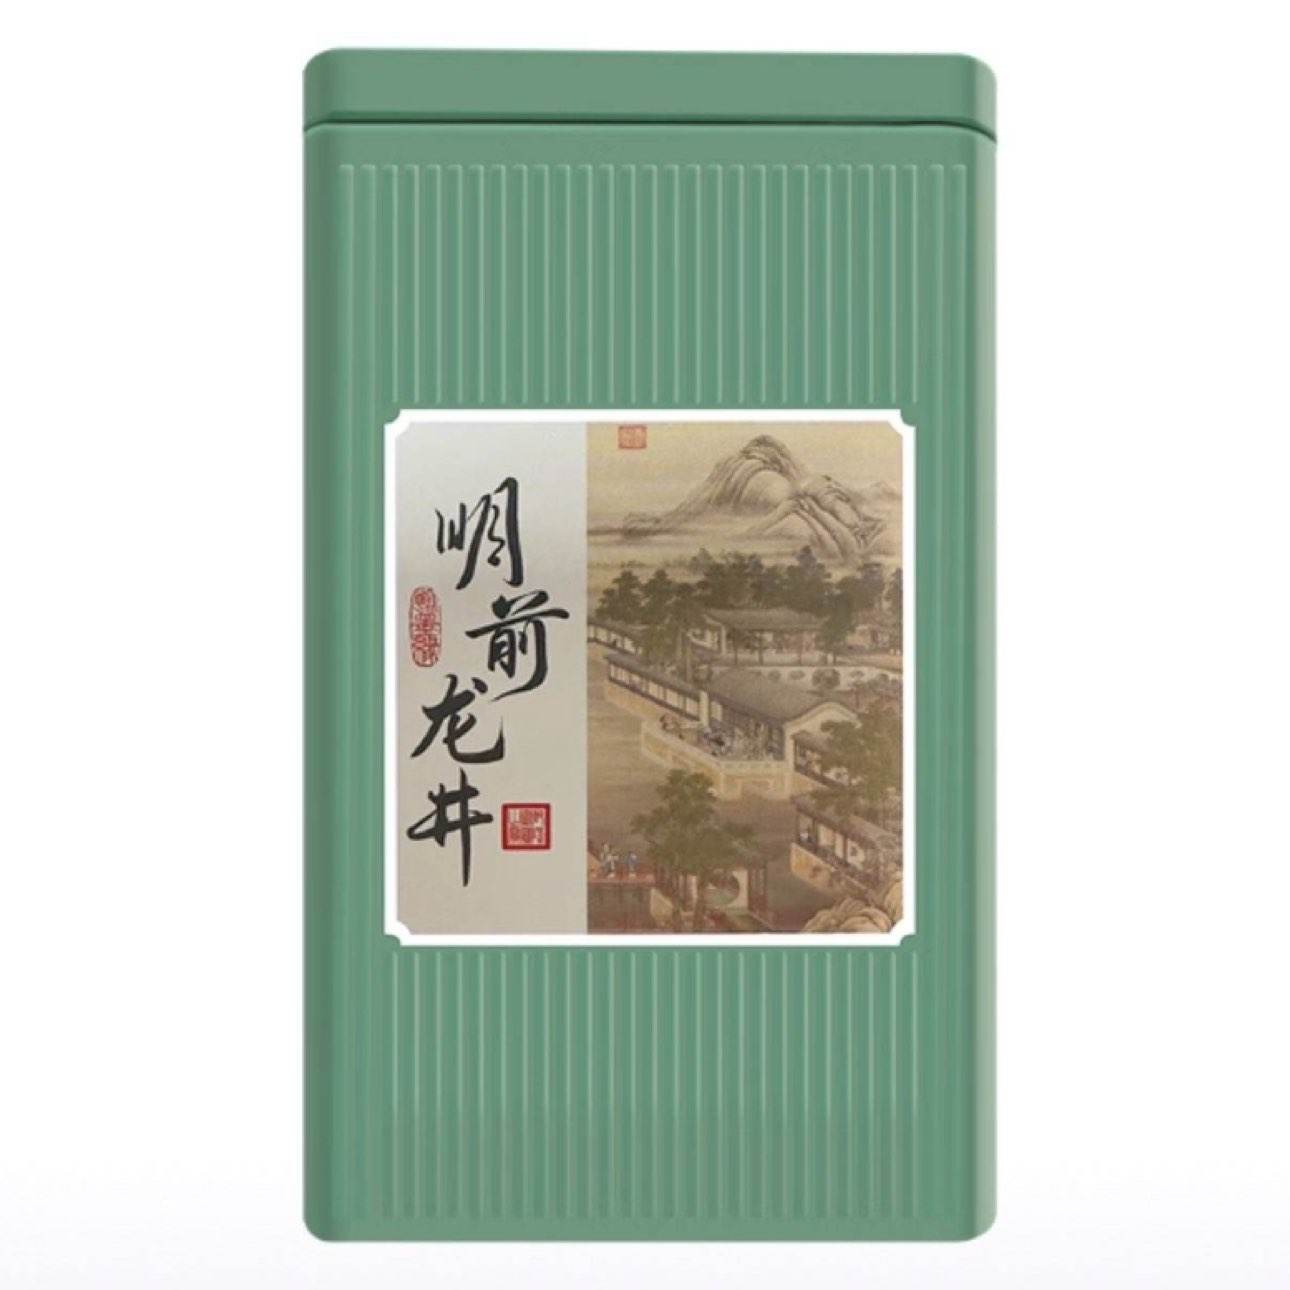 再补货：茗门天赐茶叶 品质龙井绿茶 春茶 礼盒装 9.9元